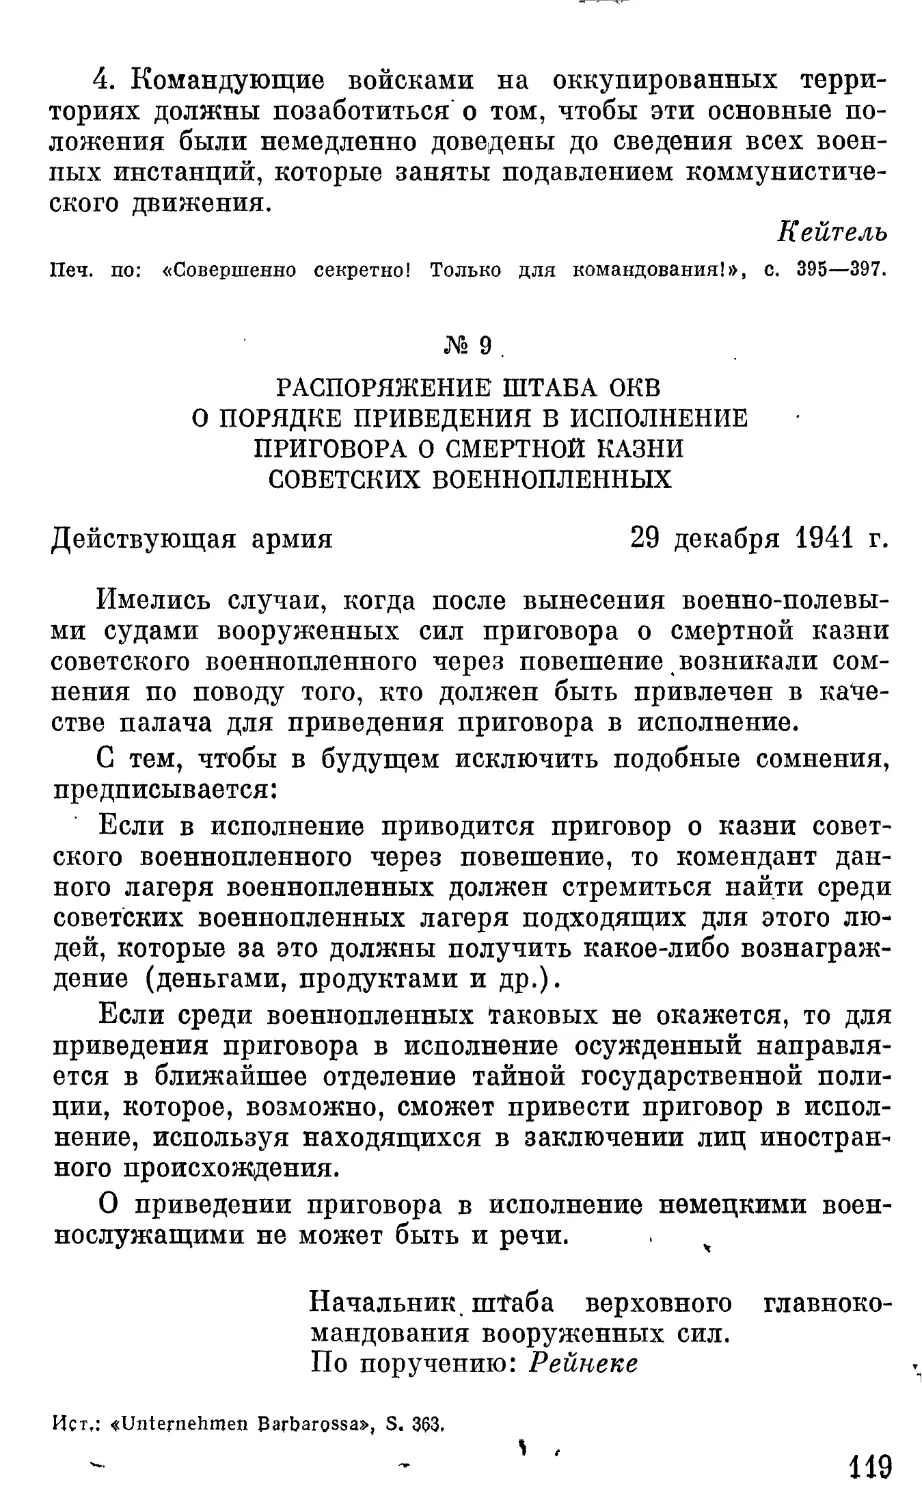 Распоряжение штаба ОКБ о порядке приведения в исполнение приговора о смертной казни советских военнопленных.